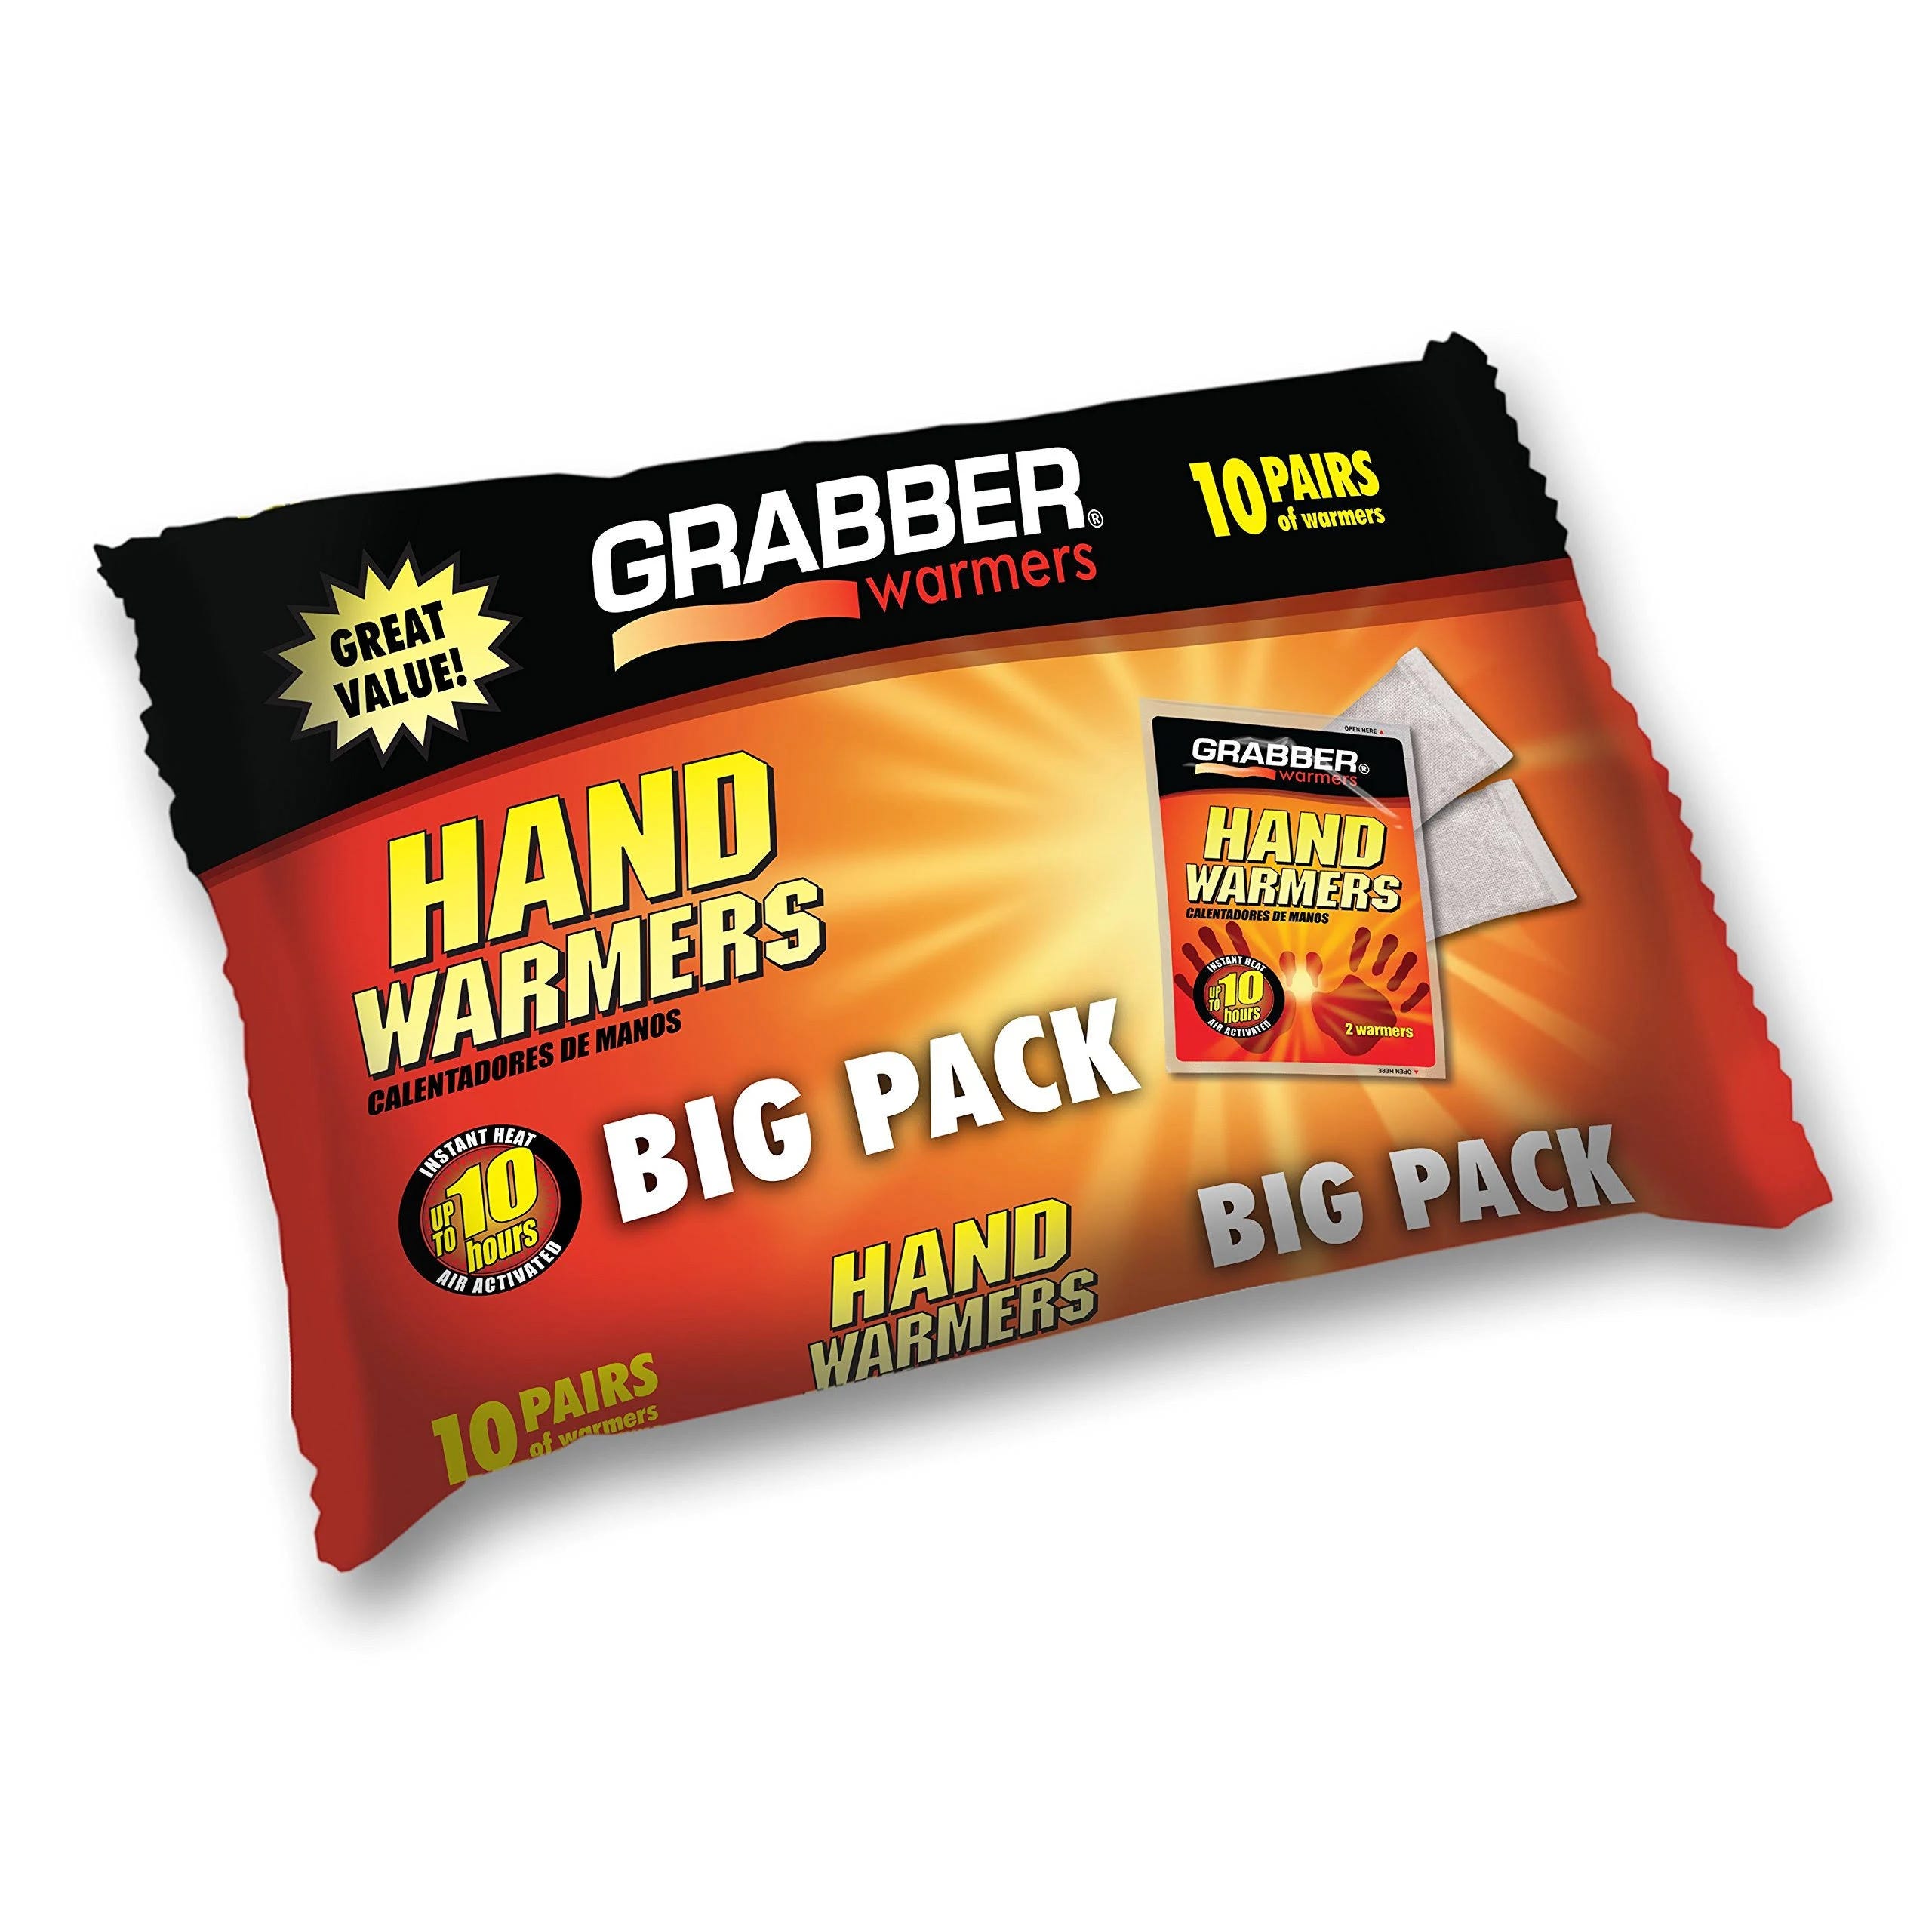 Grabber Hand Warmers - Warm Comfort for Outdoor Adventures | Image